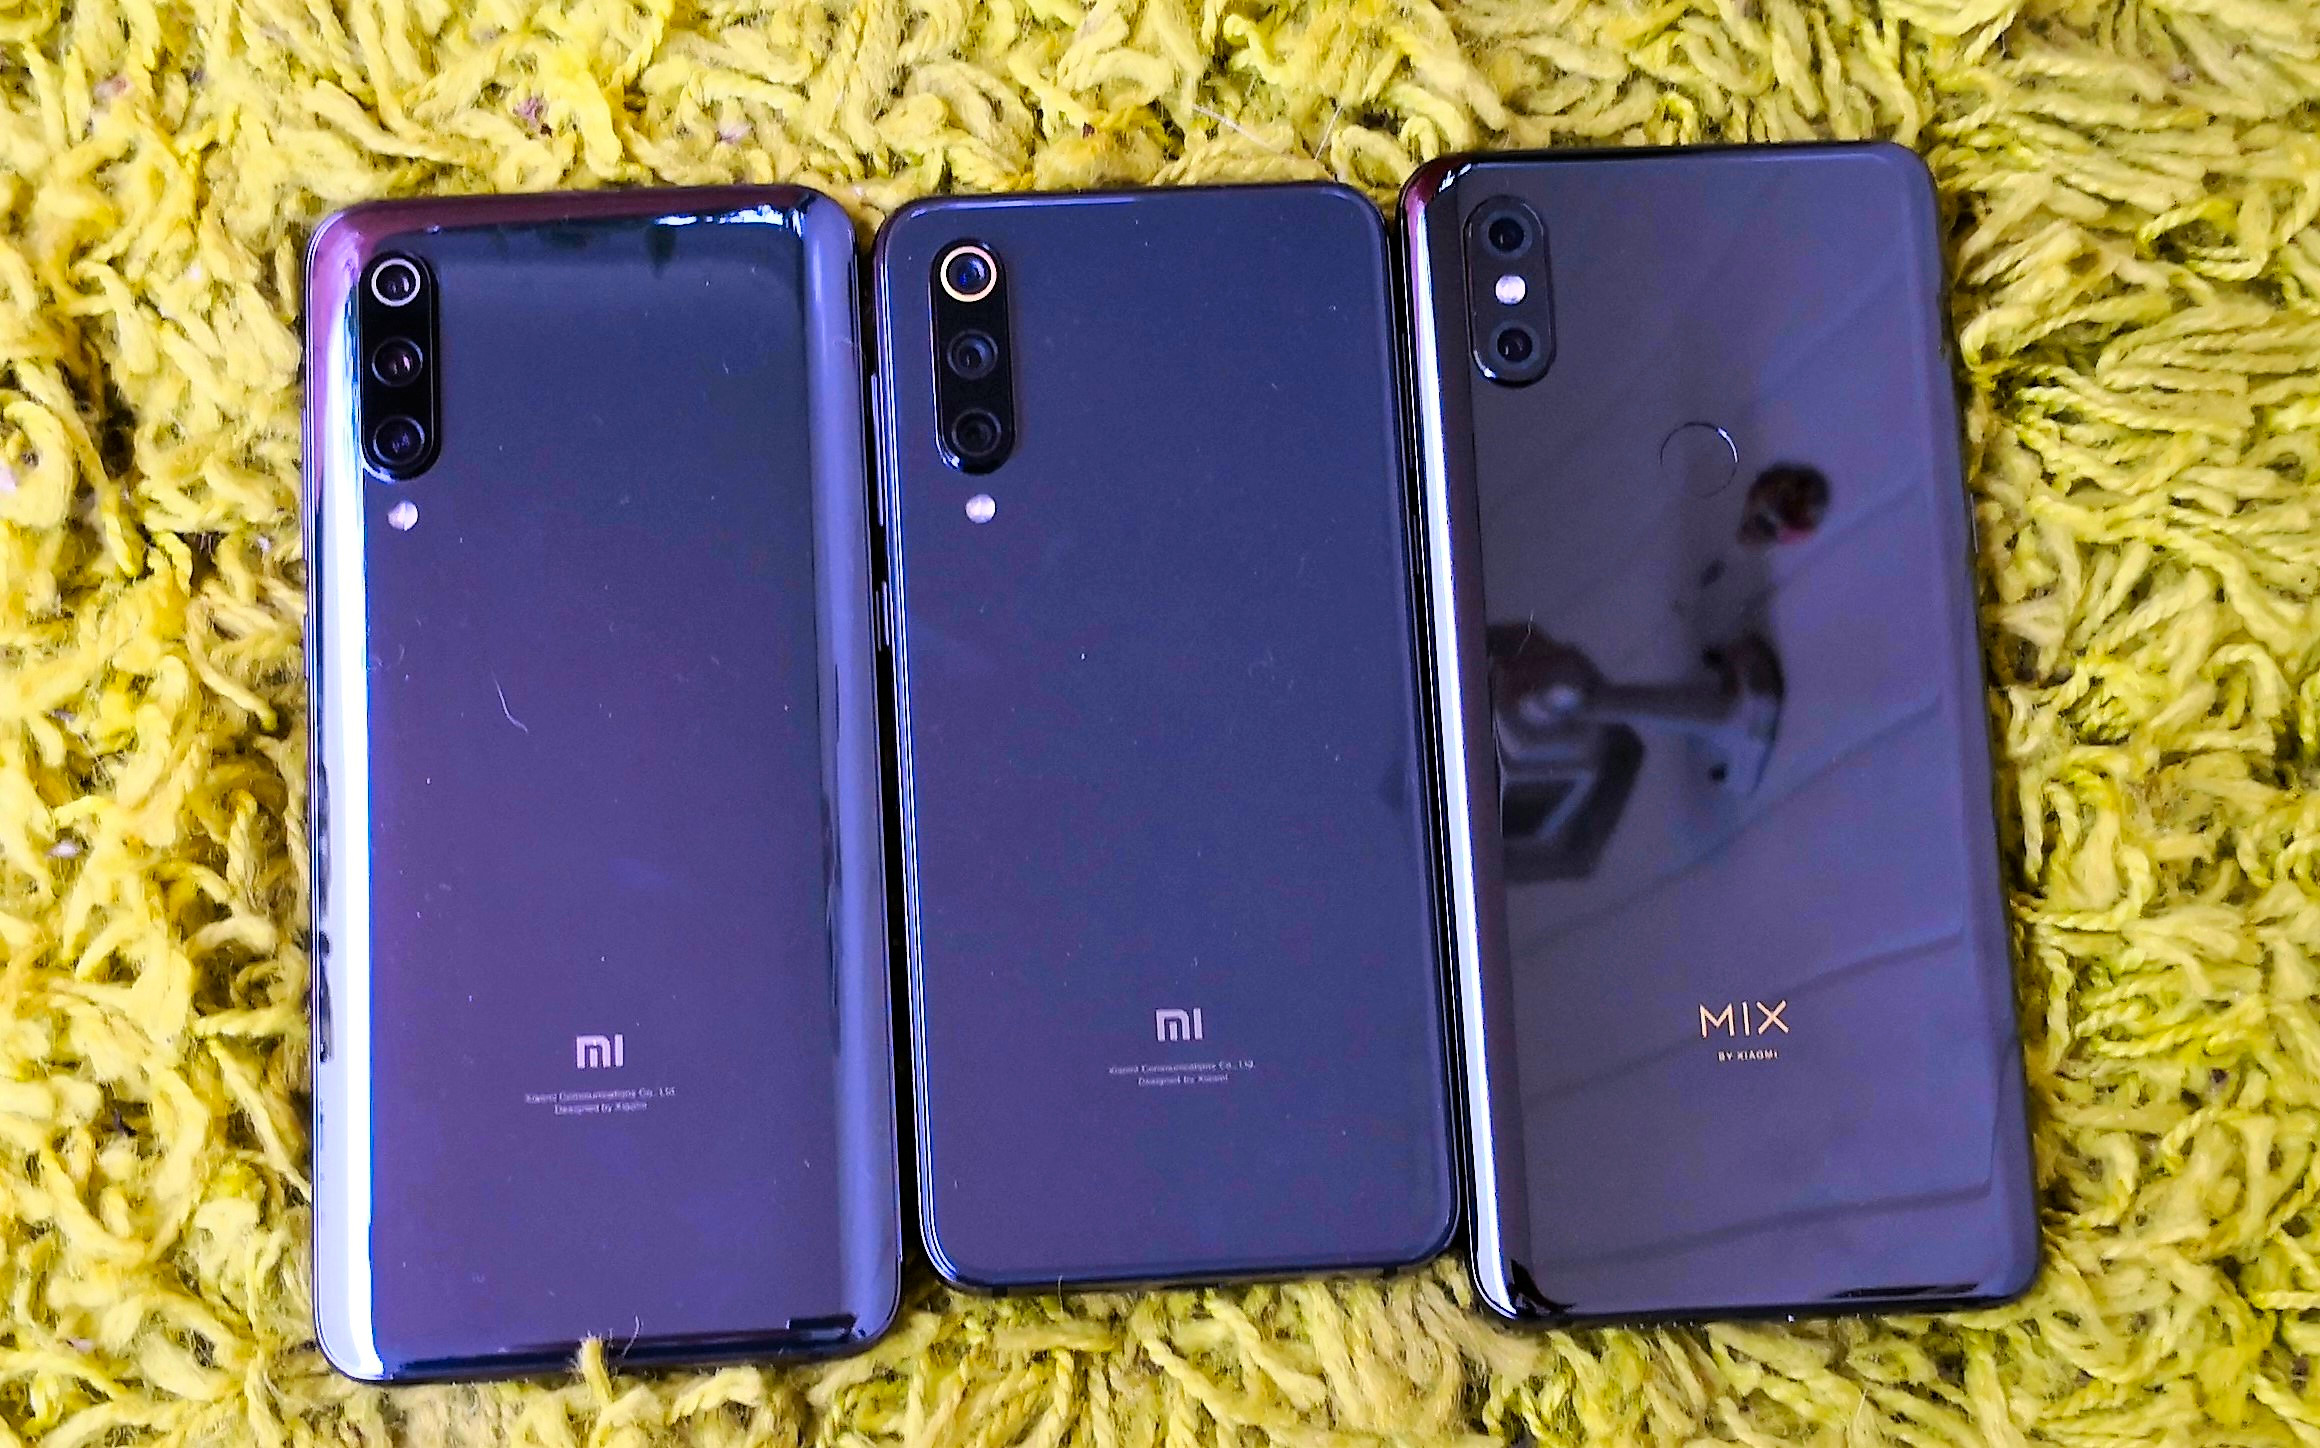 camera comparison: Mi 9 vs. Xiaomi Mi 9 SE vs. Xiaomi Mi Mix 3 - NotebookCheck.net Reviews